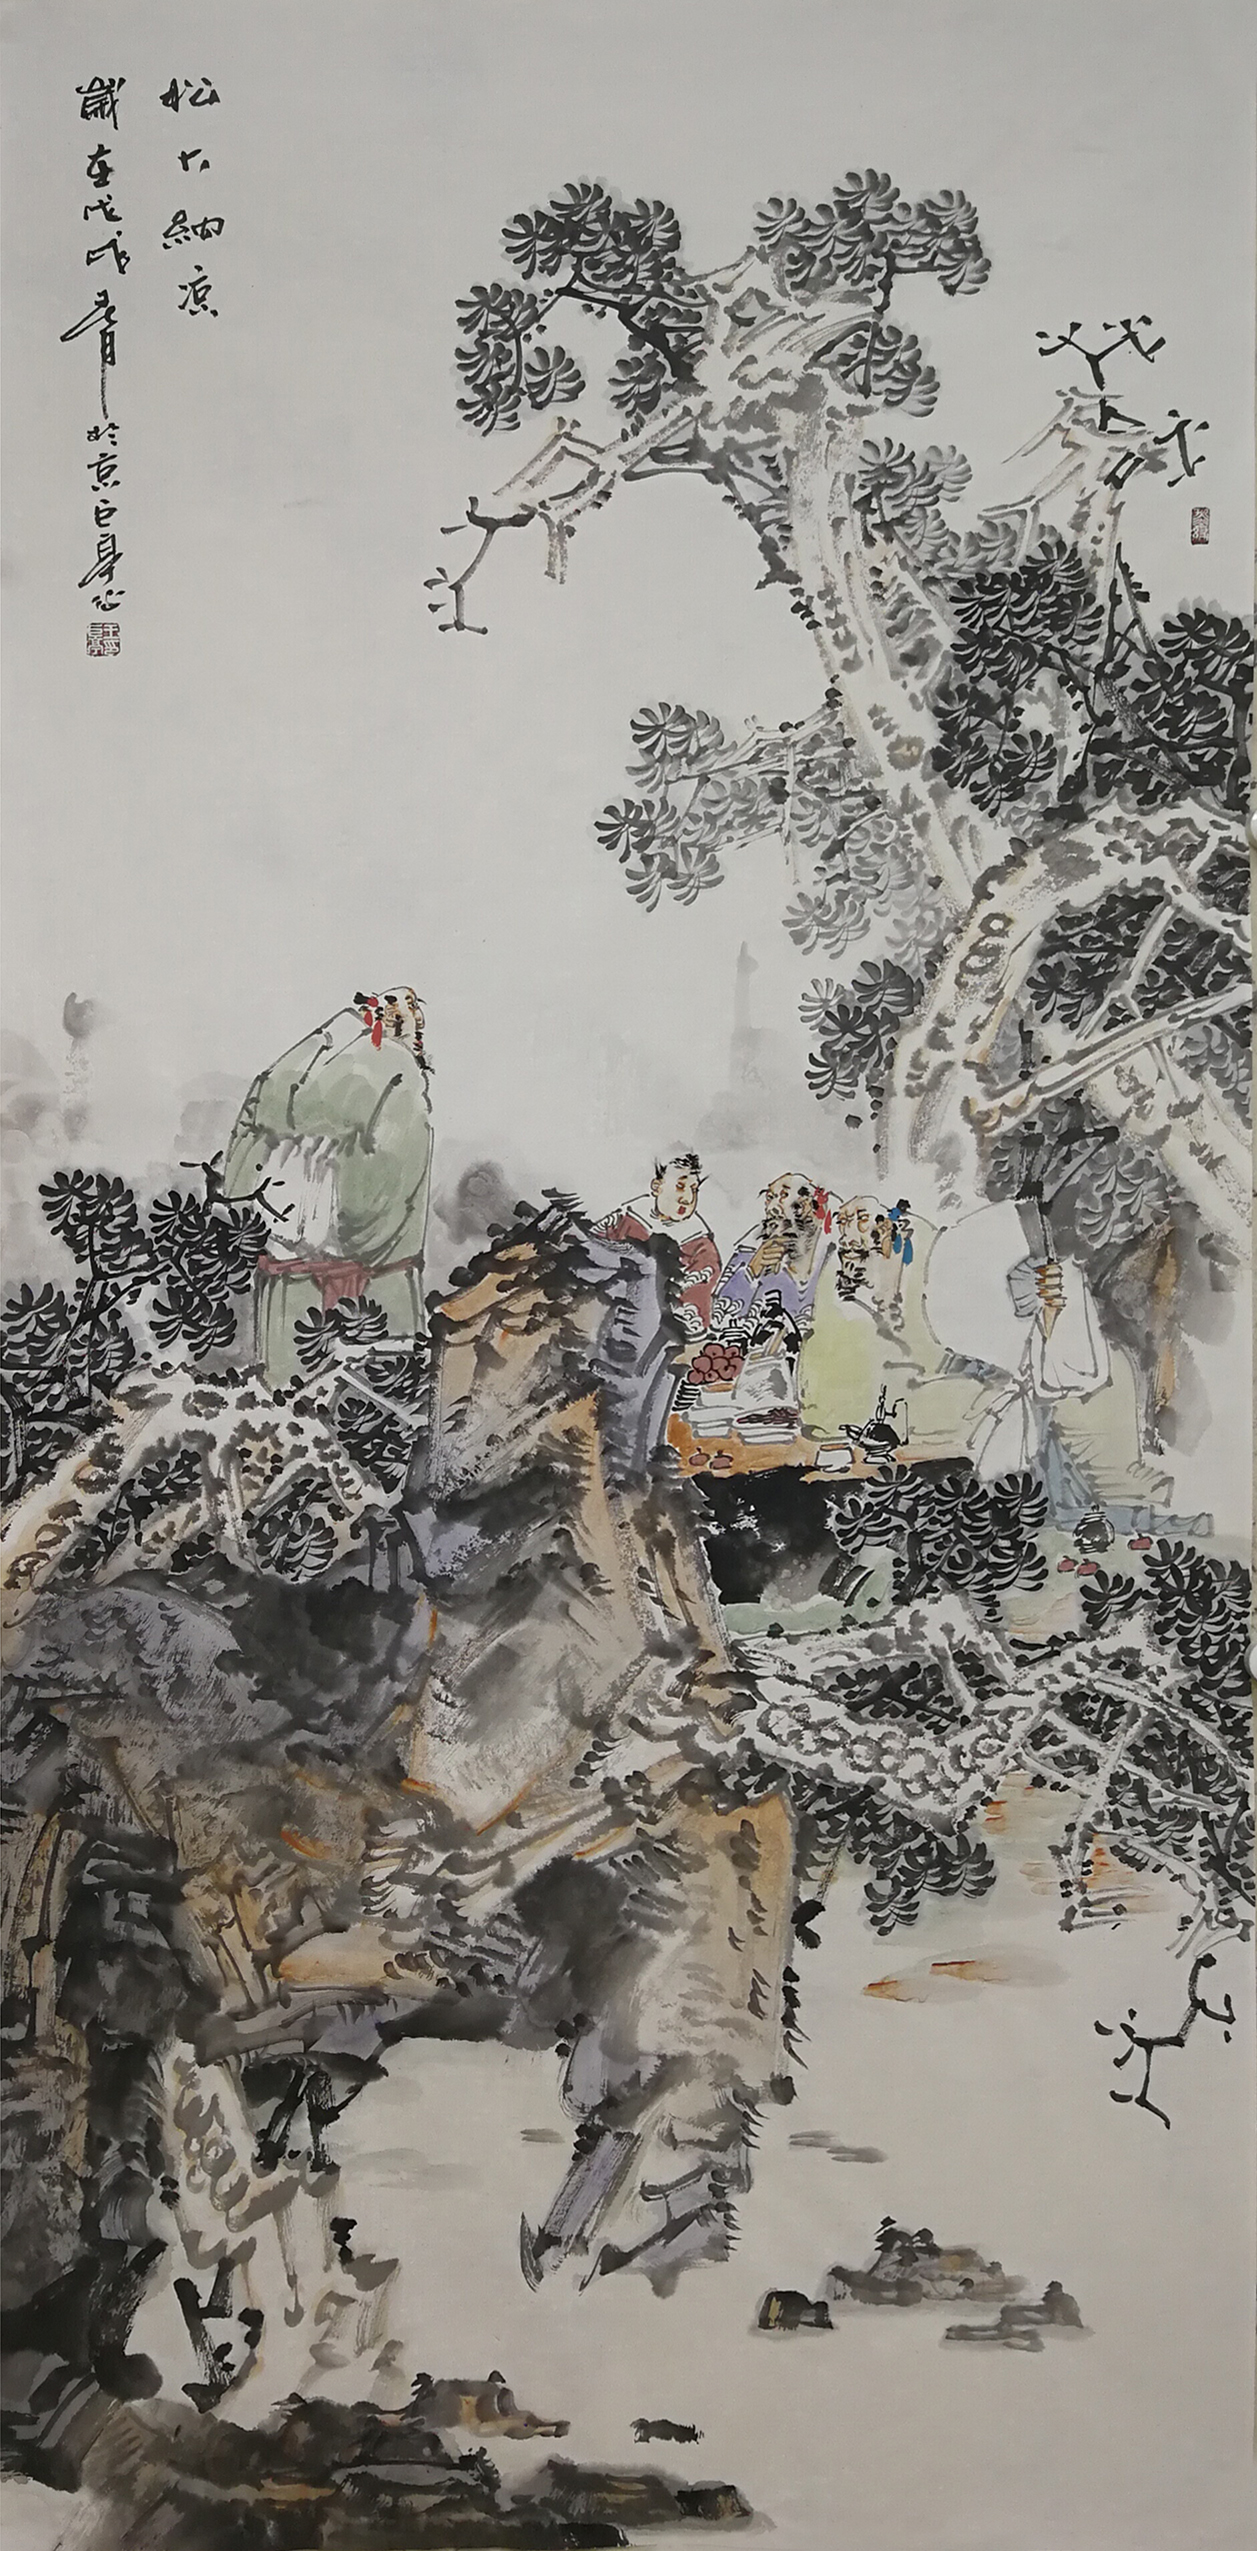 中国美术人物志——王巨亭·第四届艺术名家书画大拜年